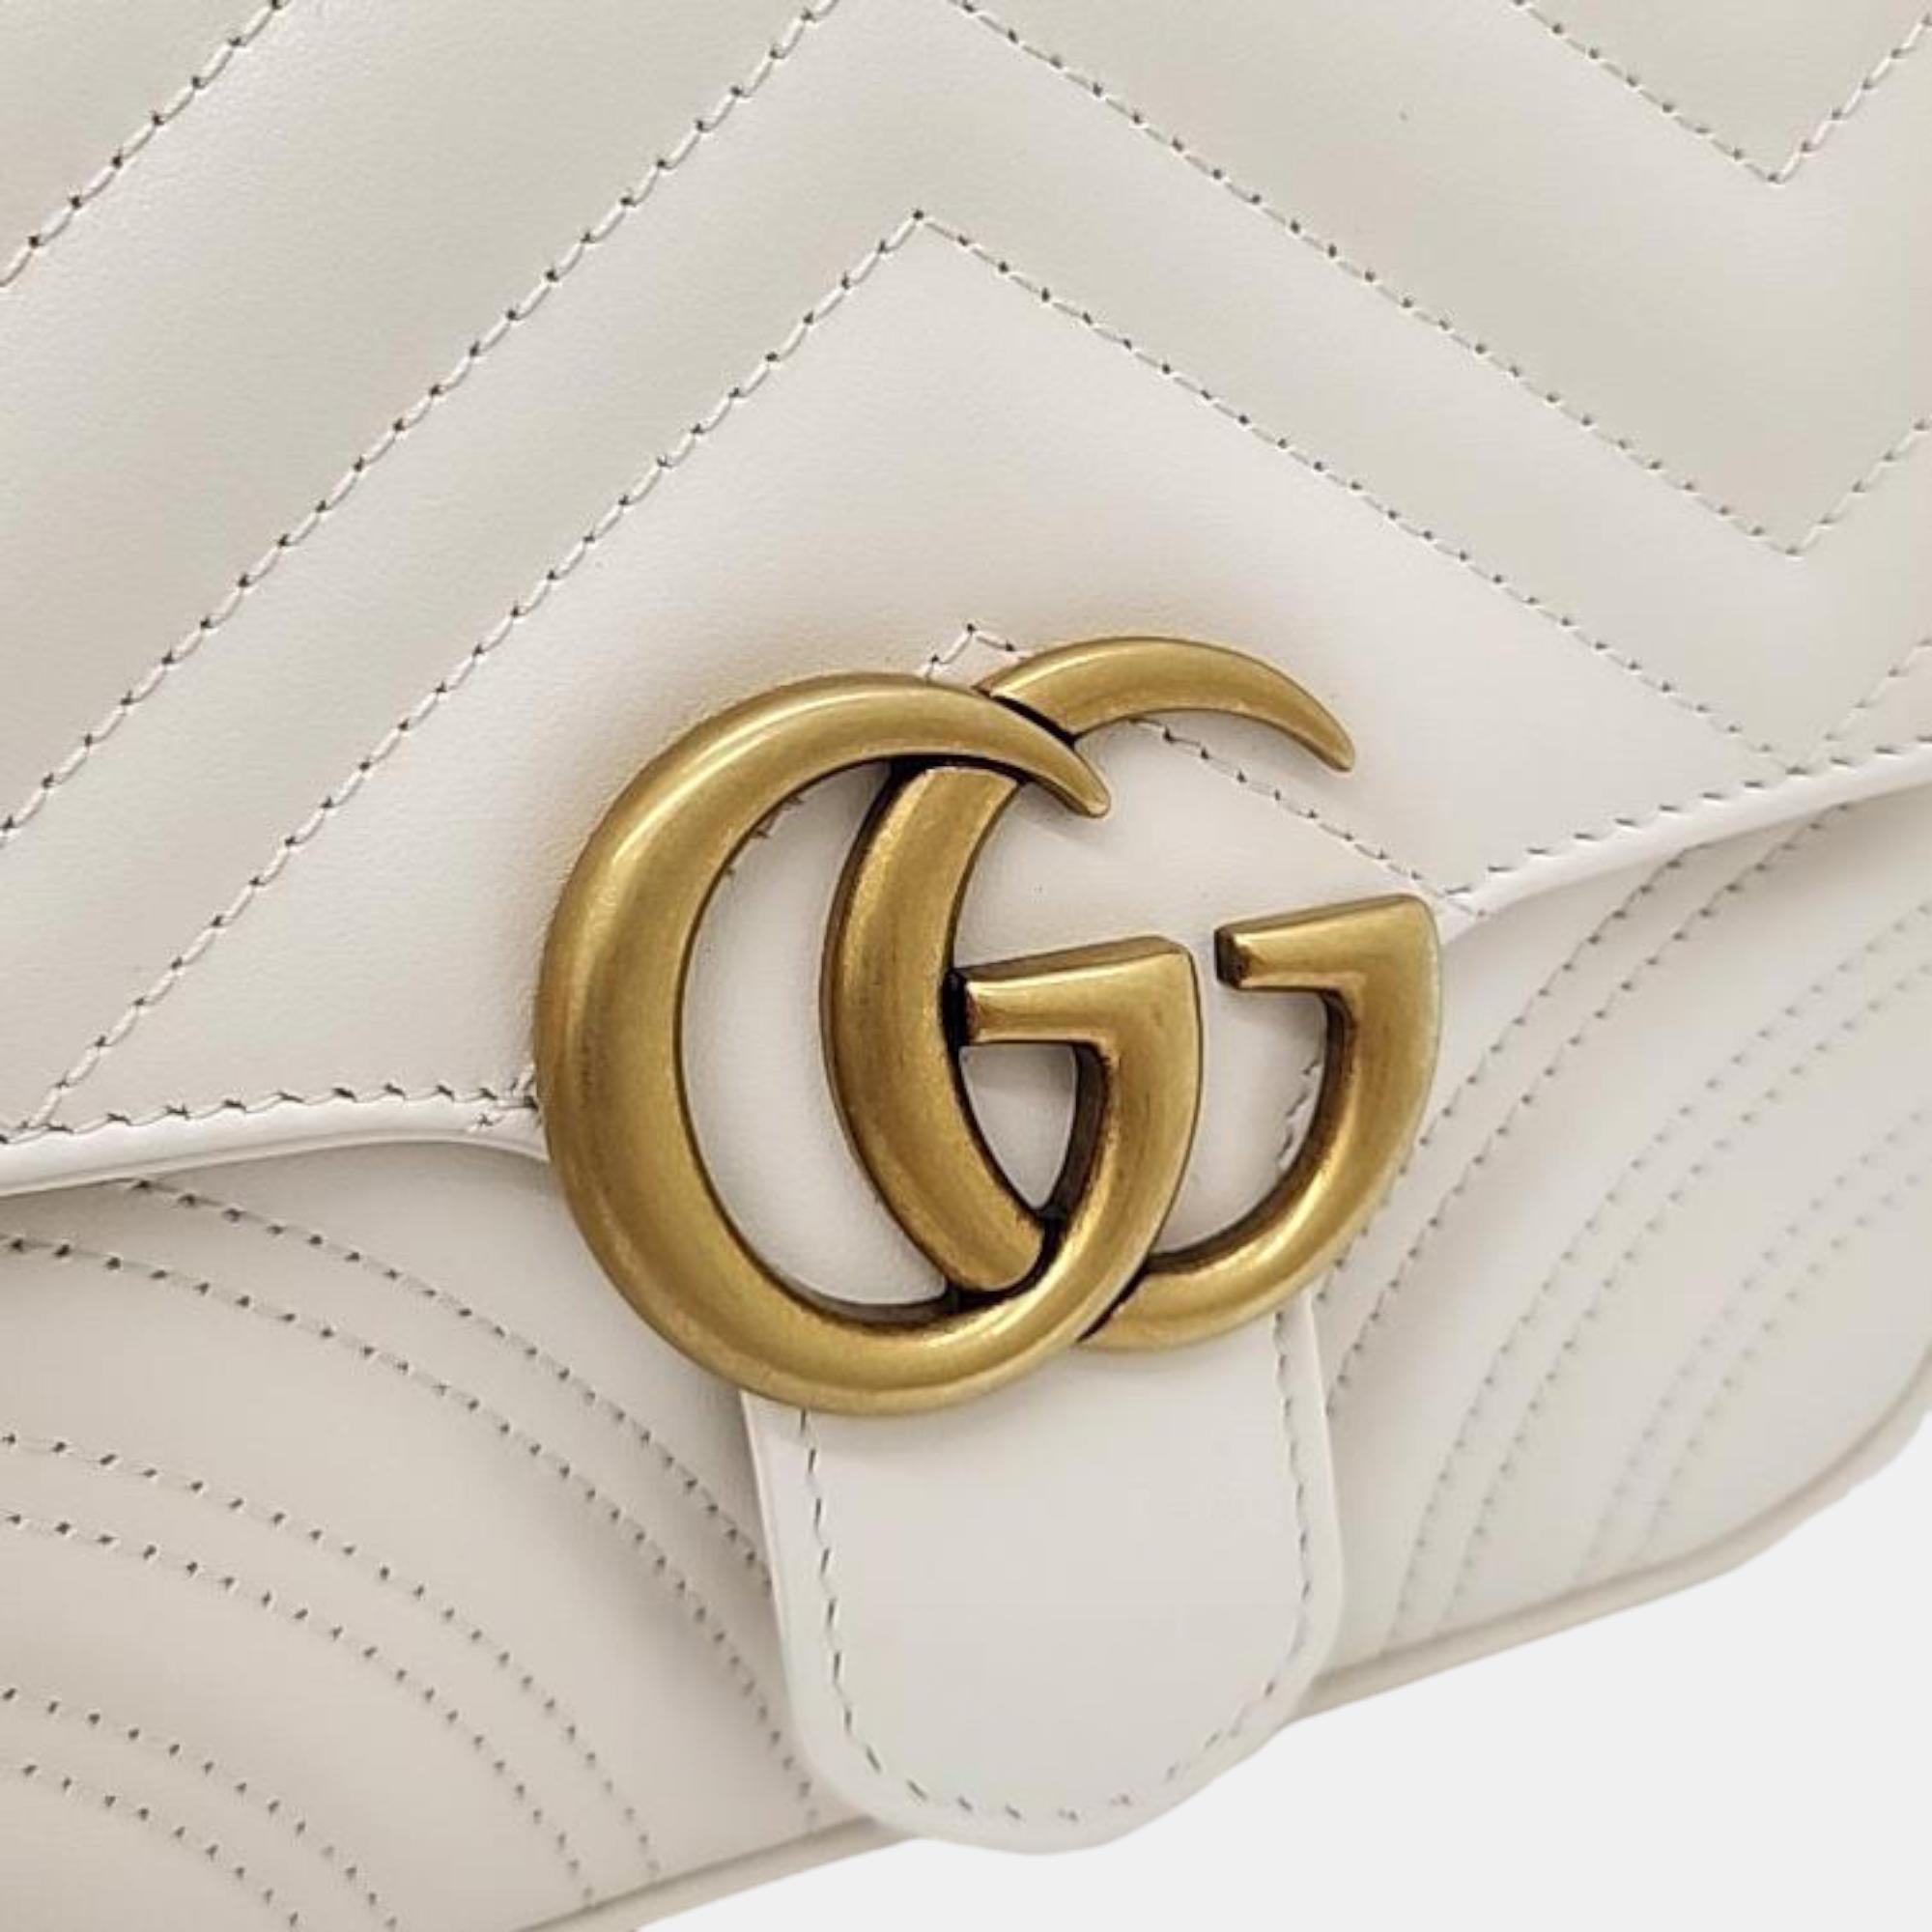 Gucci Marmont Matrace Mini Bag (739682)